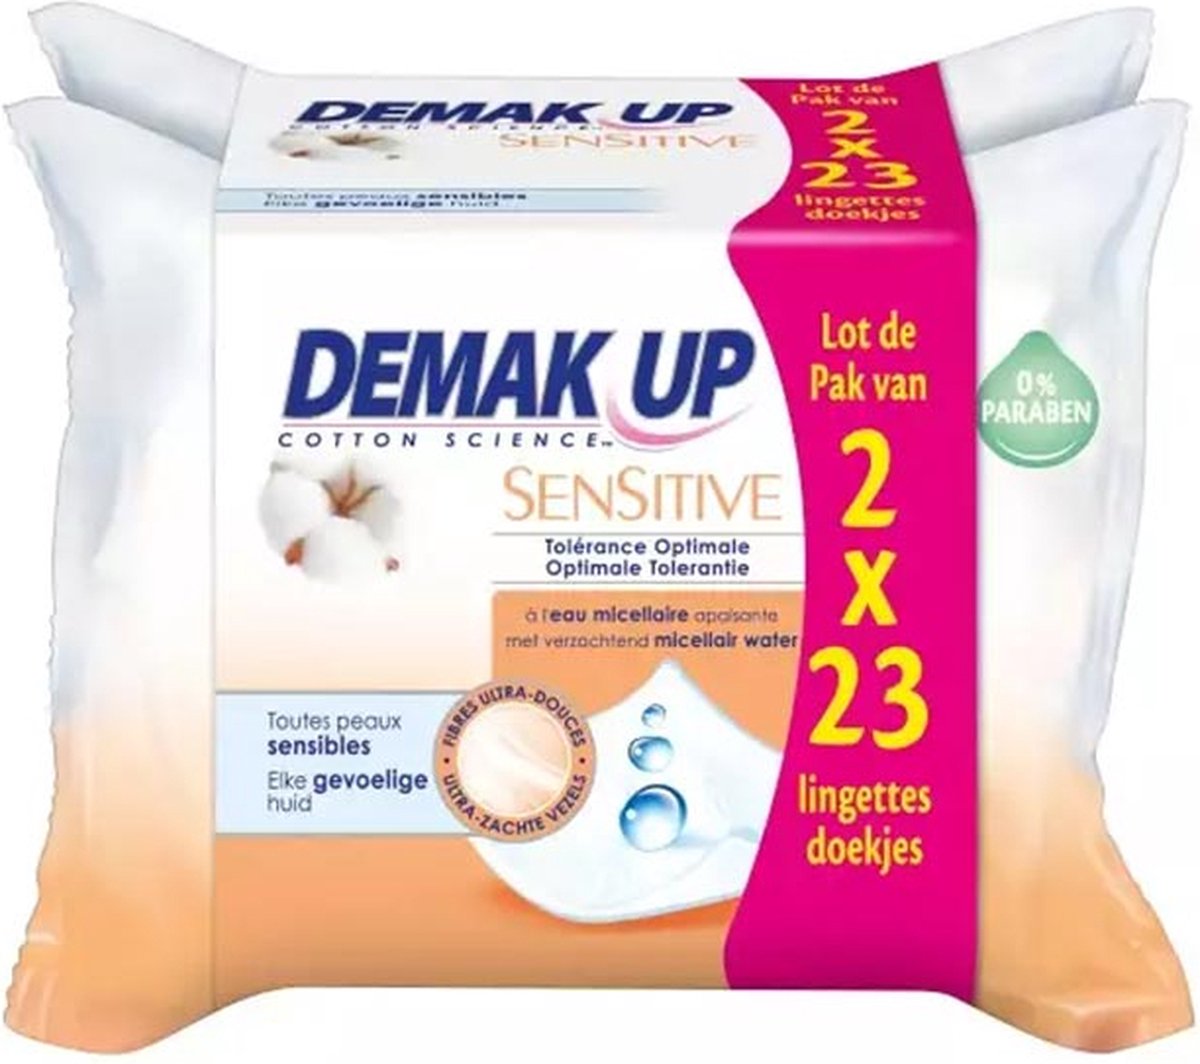 Demak'Up Sensitive Reinigingsdoekjes Make-up Remover - 2x23 stuks